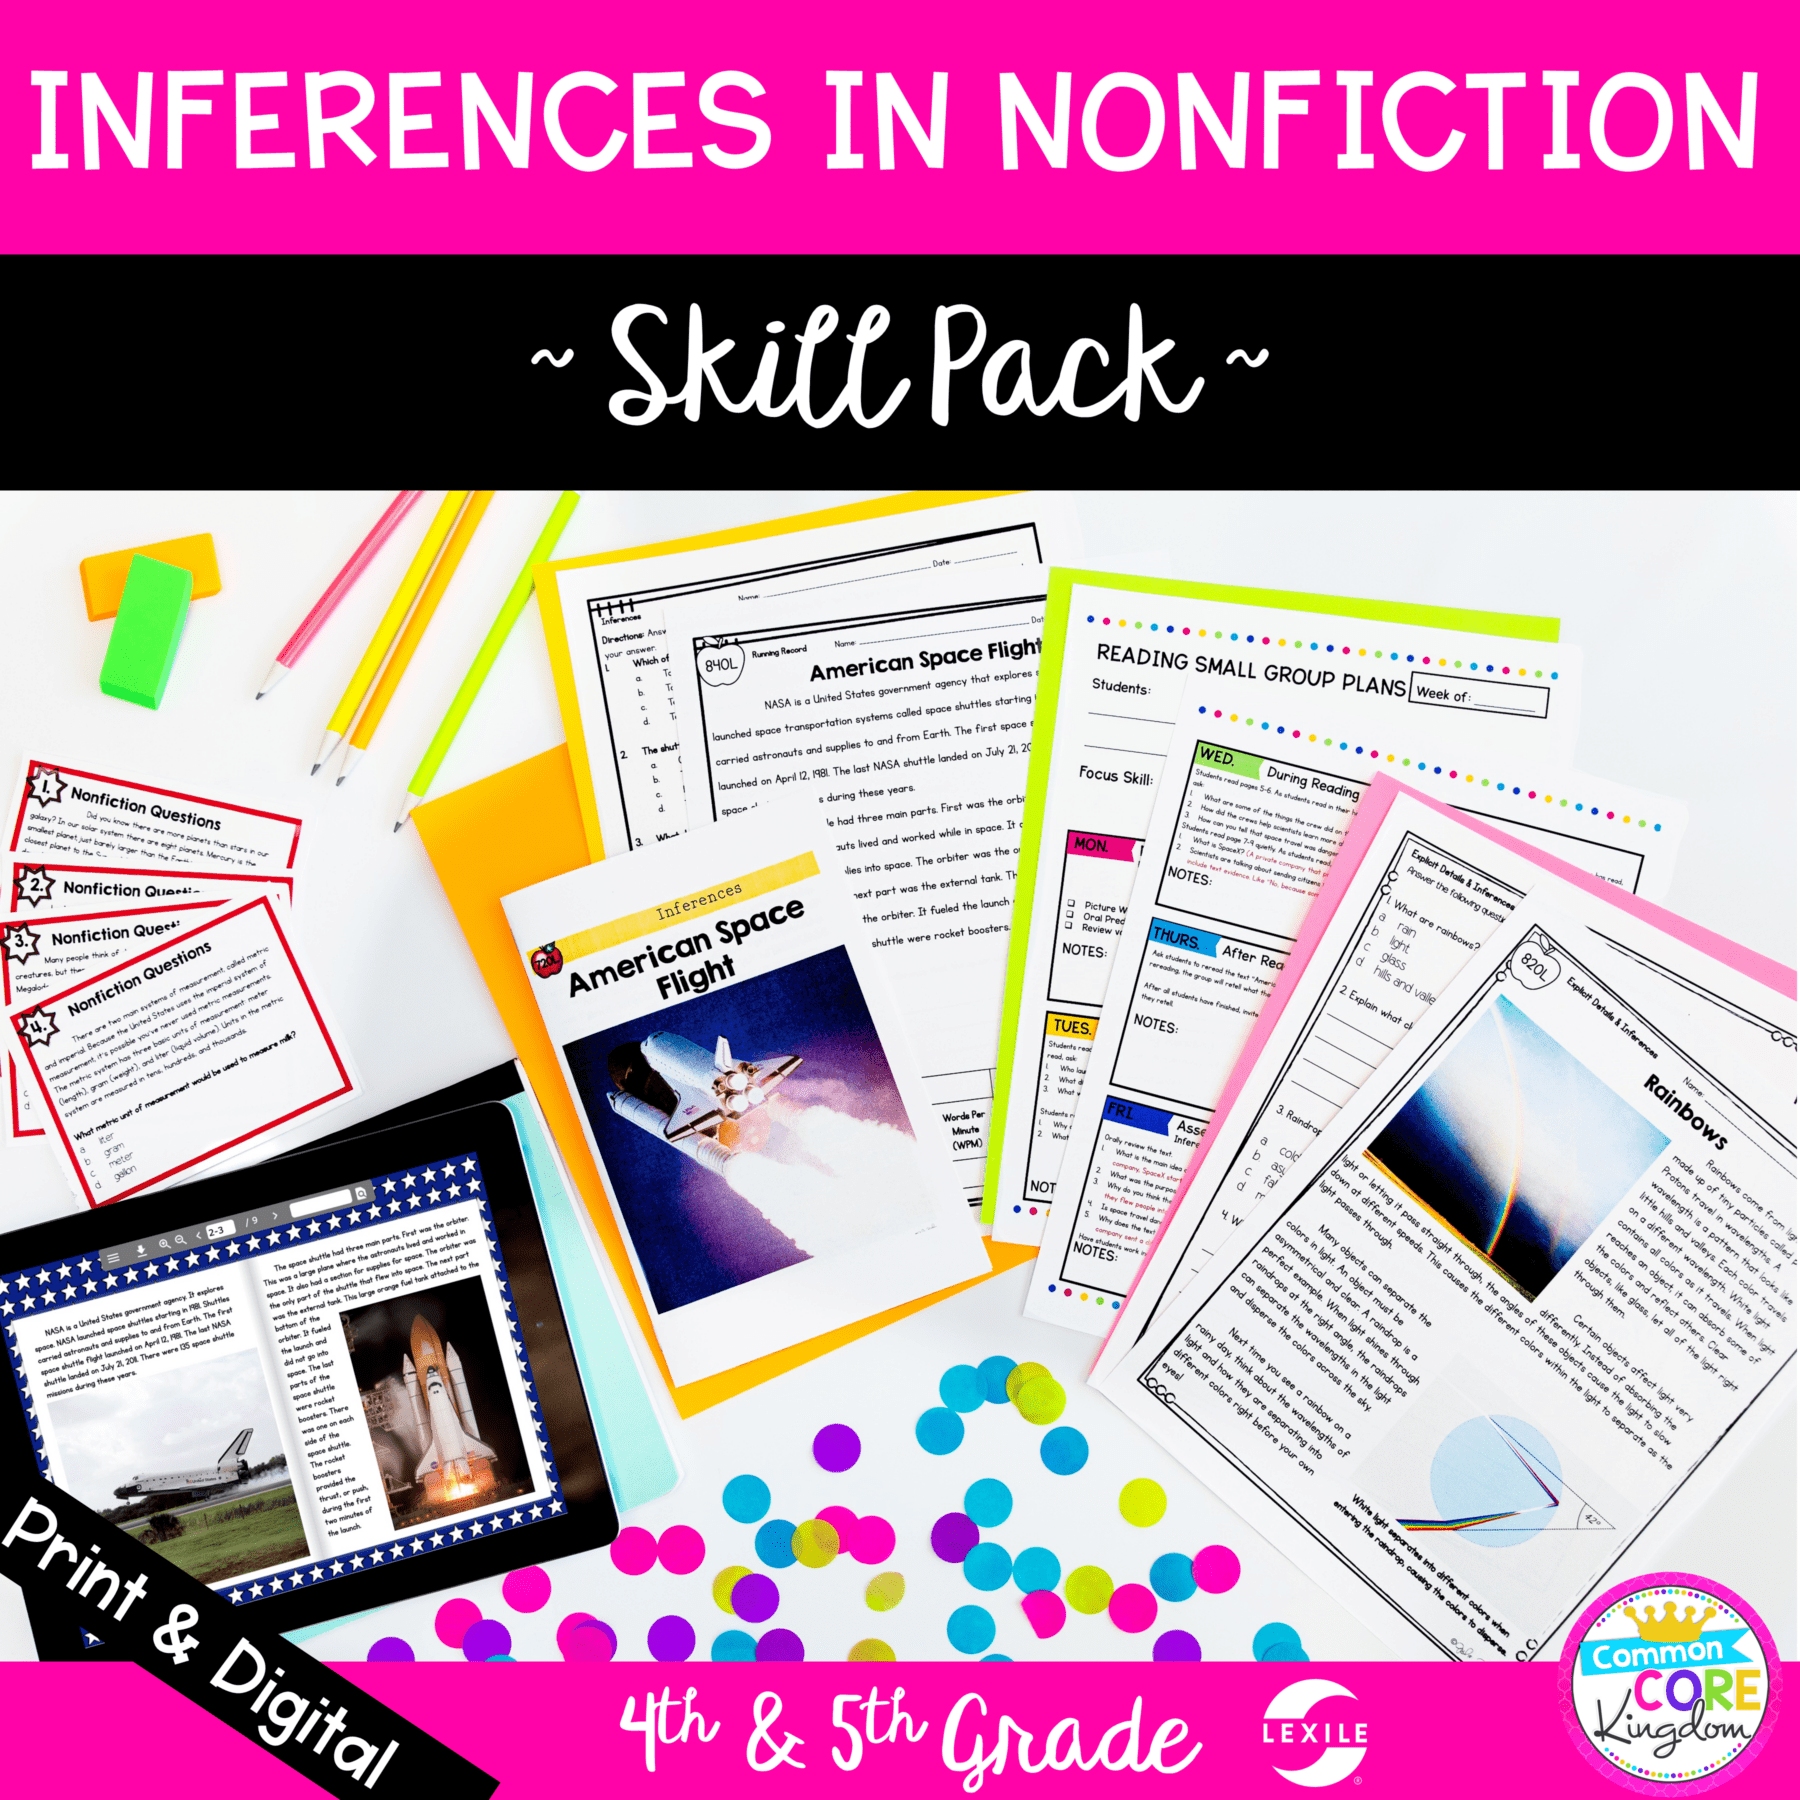 skill-pack-nonfiction-inferences-4th-grade-ri-4-1-5th-grade-ri-5-1